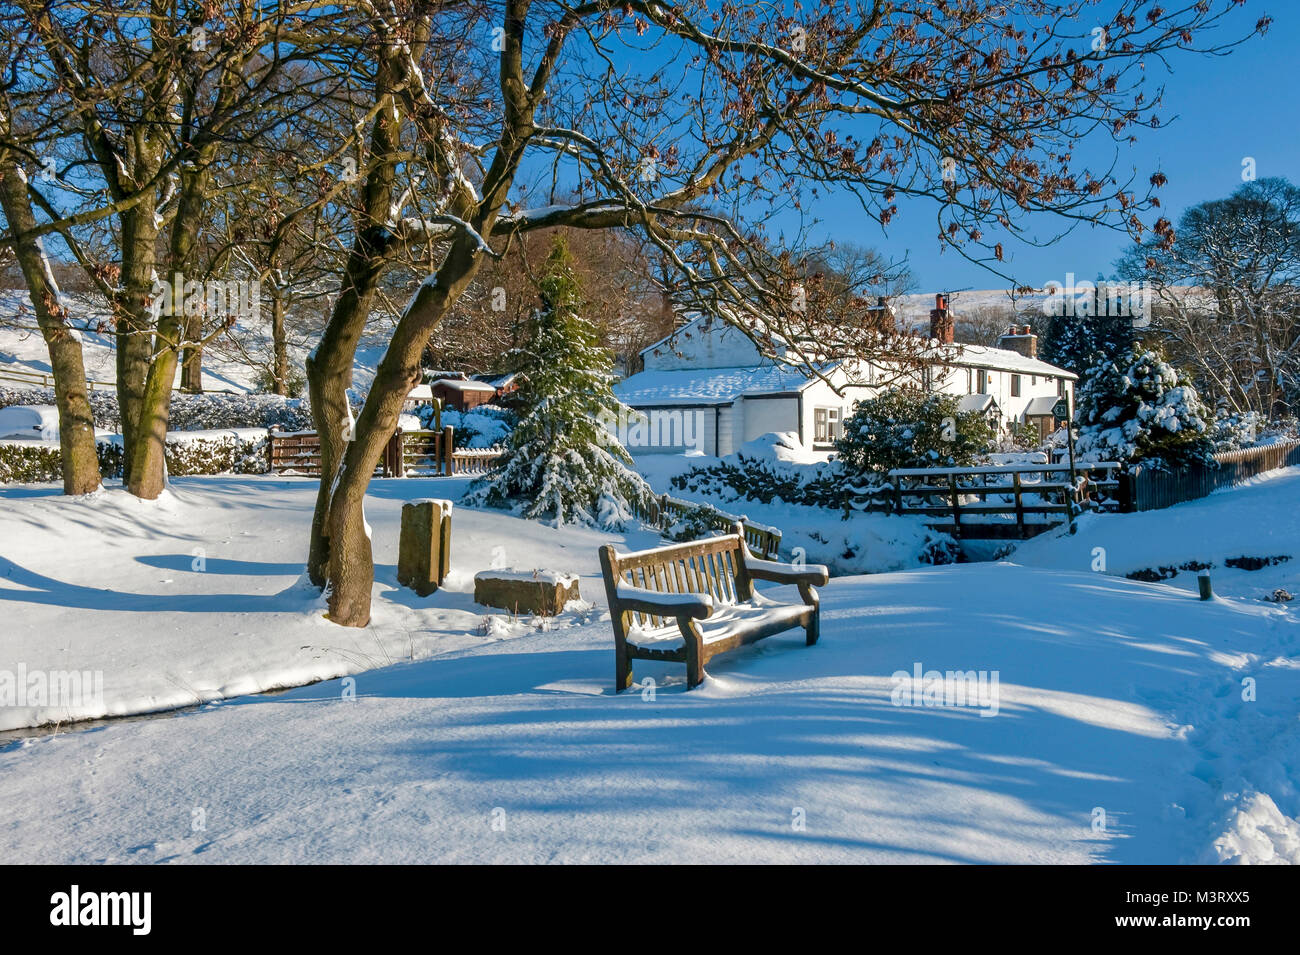 Escena de Invierno Blanco sotobosque es una aldea cerca de Chorley, Lancashire, Inglaterra. Foto de stock